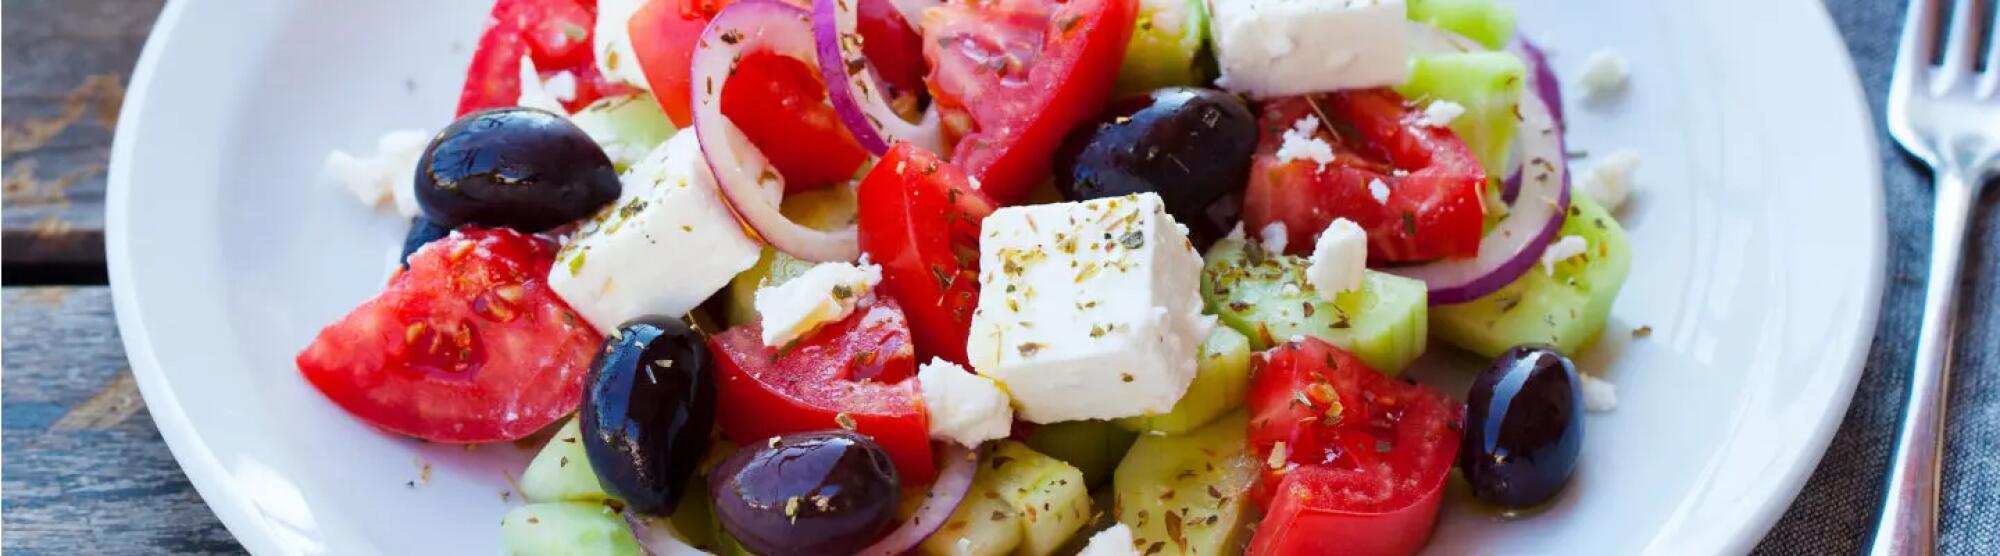 Recette : Salade de poivron, radis, tomates, olives et fromage frais